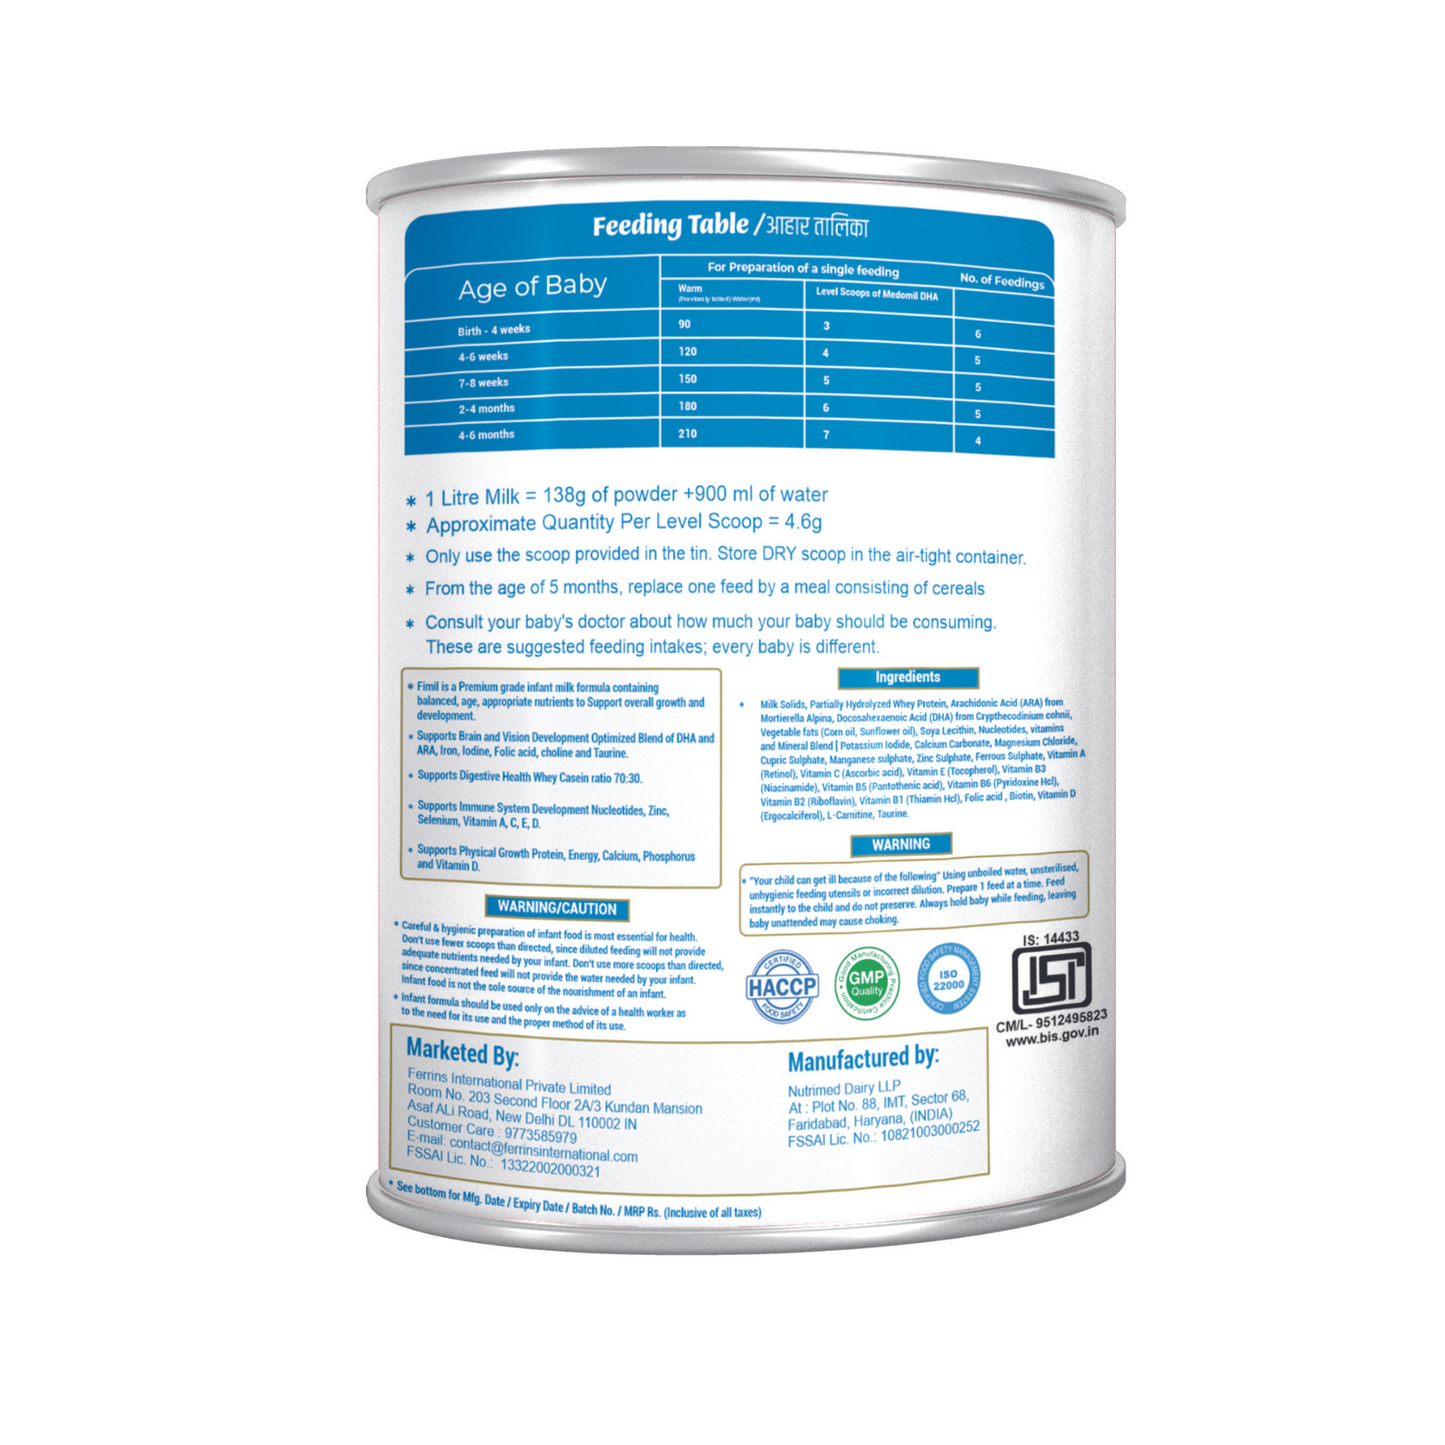 FiMiL 2 含益生元后续配方奶粉（6 个月以上），400 克